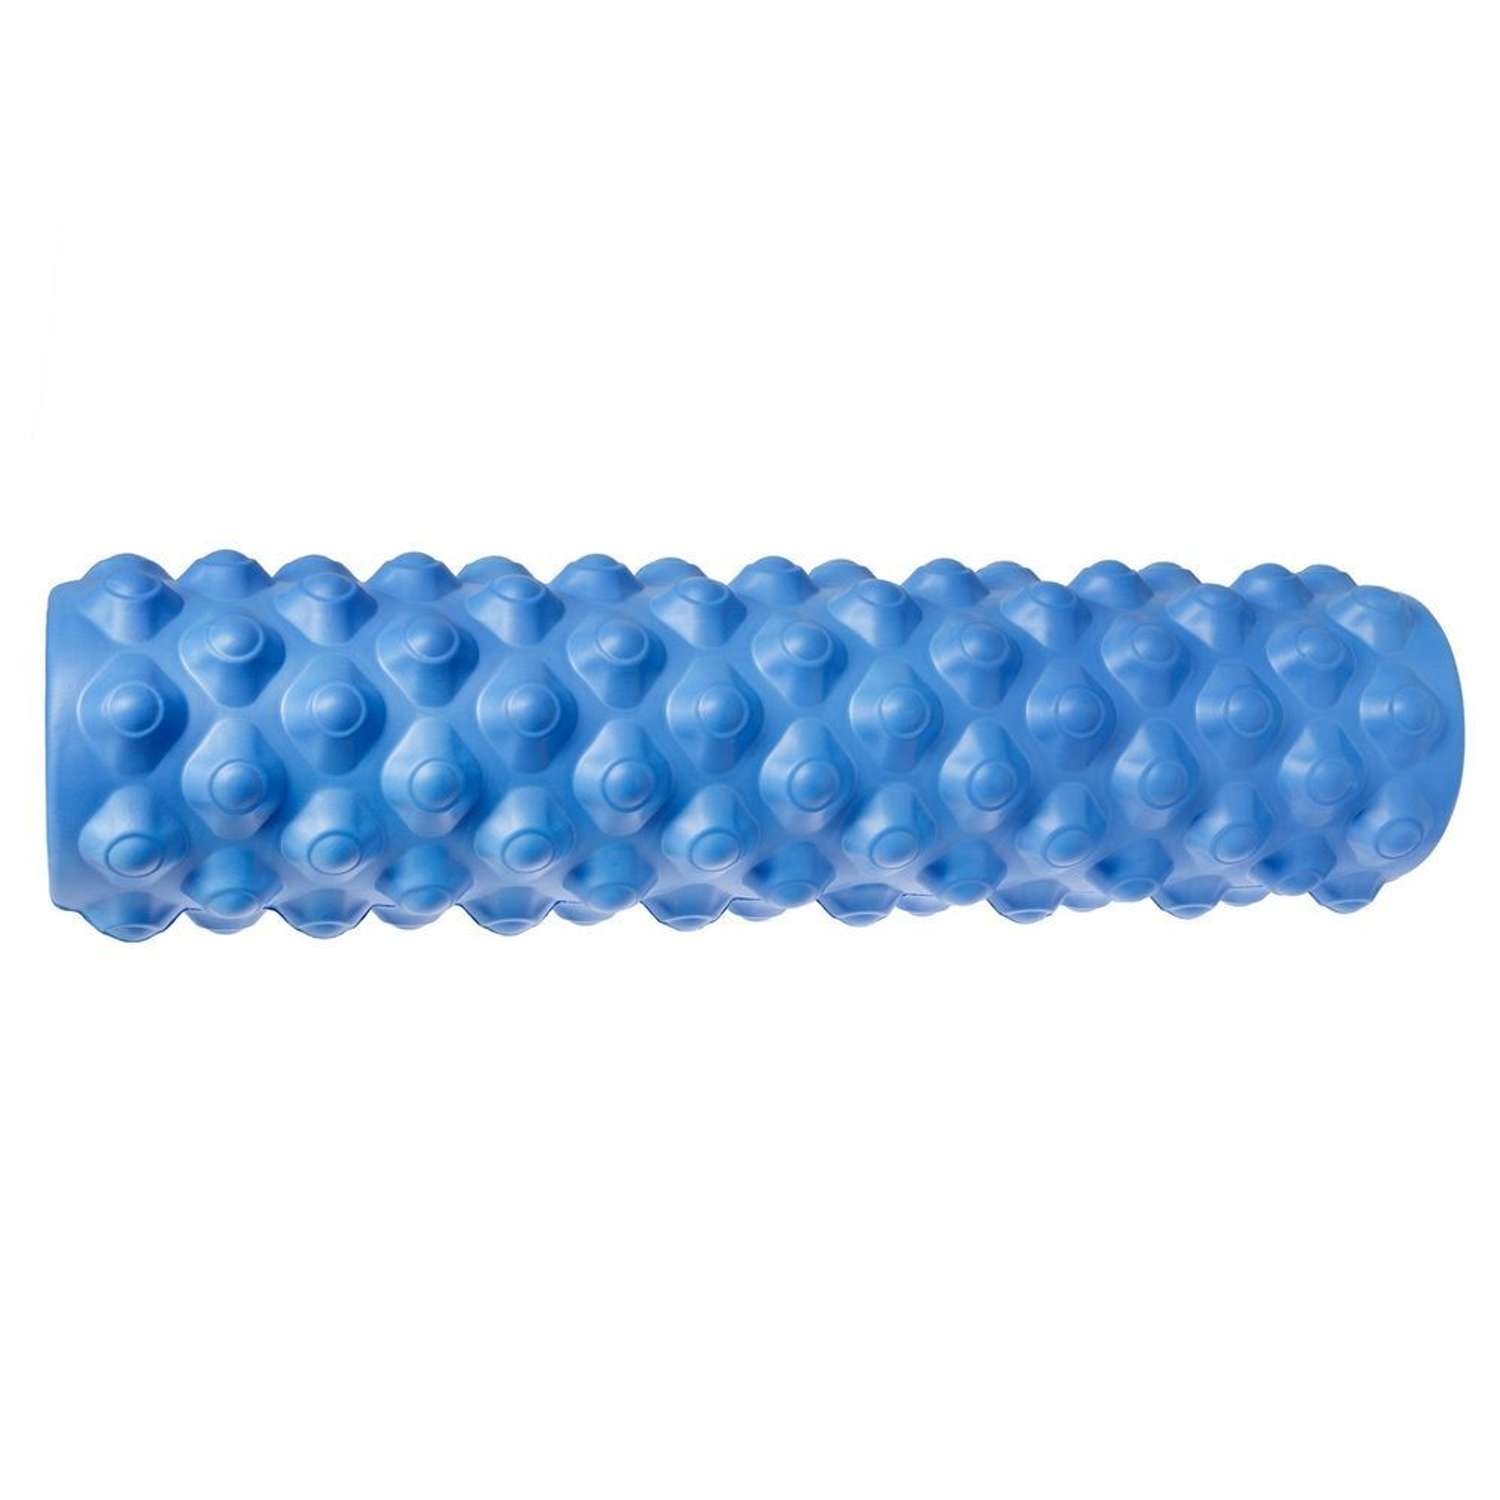 Ролик массажный STRONG BODY с шипами спортивный для фитнеса МФР йоги и пилатес 45 см х 12 см синий - фото 2